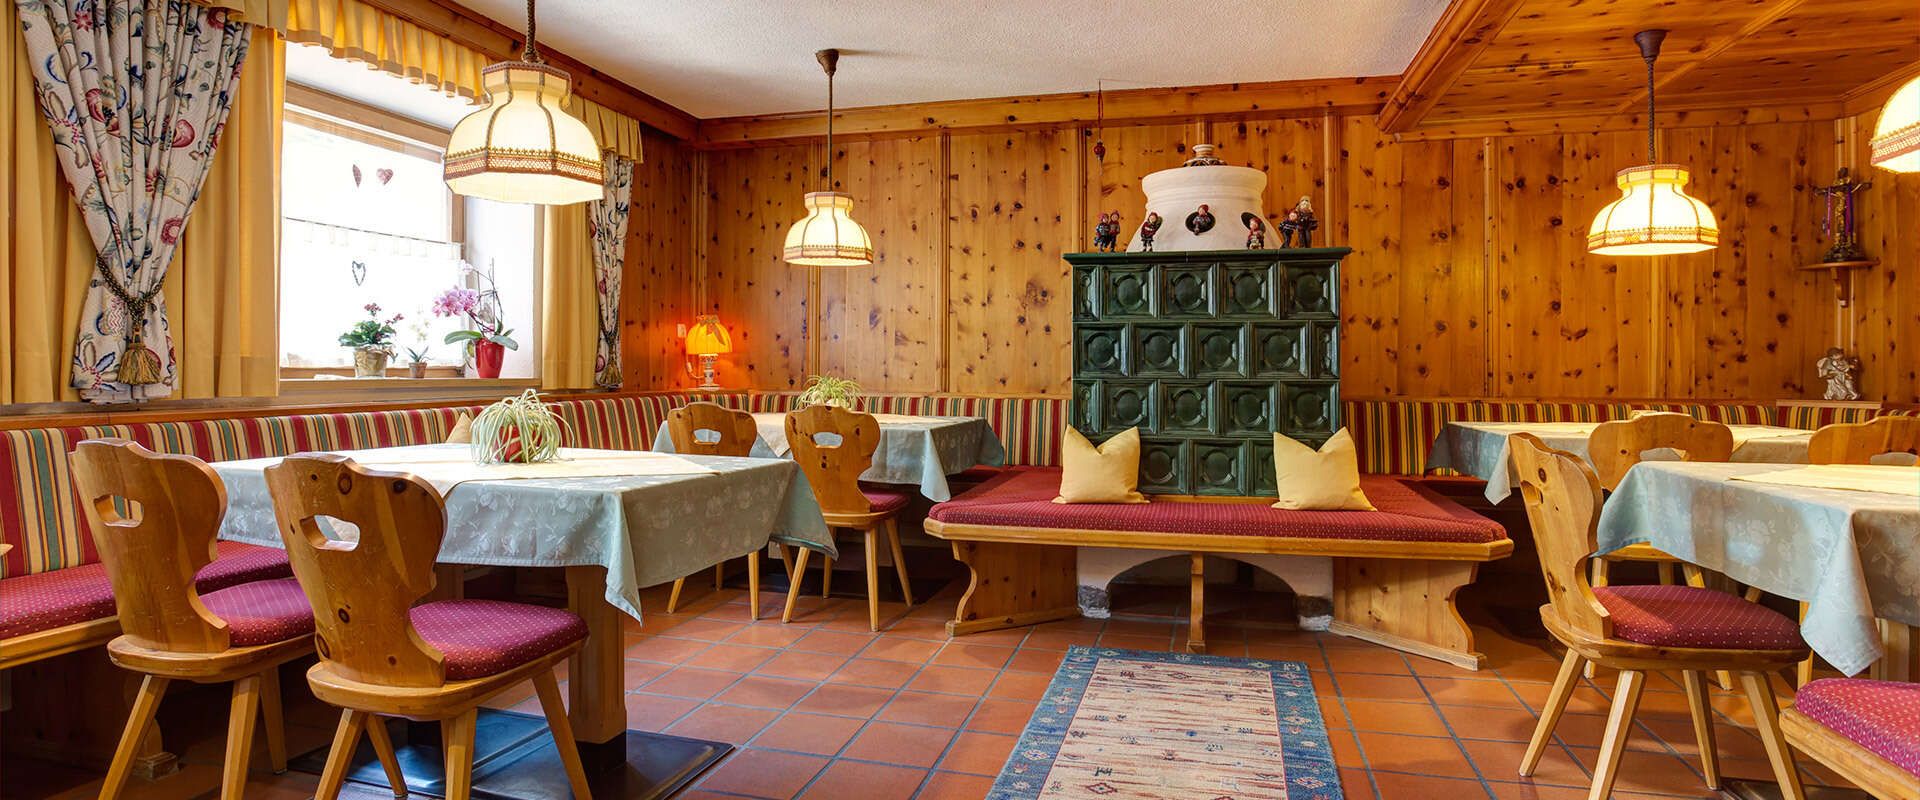 Breakfast room in the Pension Roman in Pettneu am Arlberg